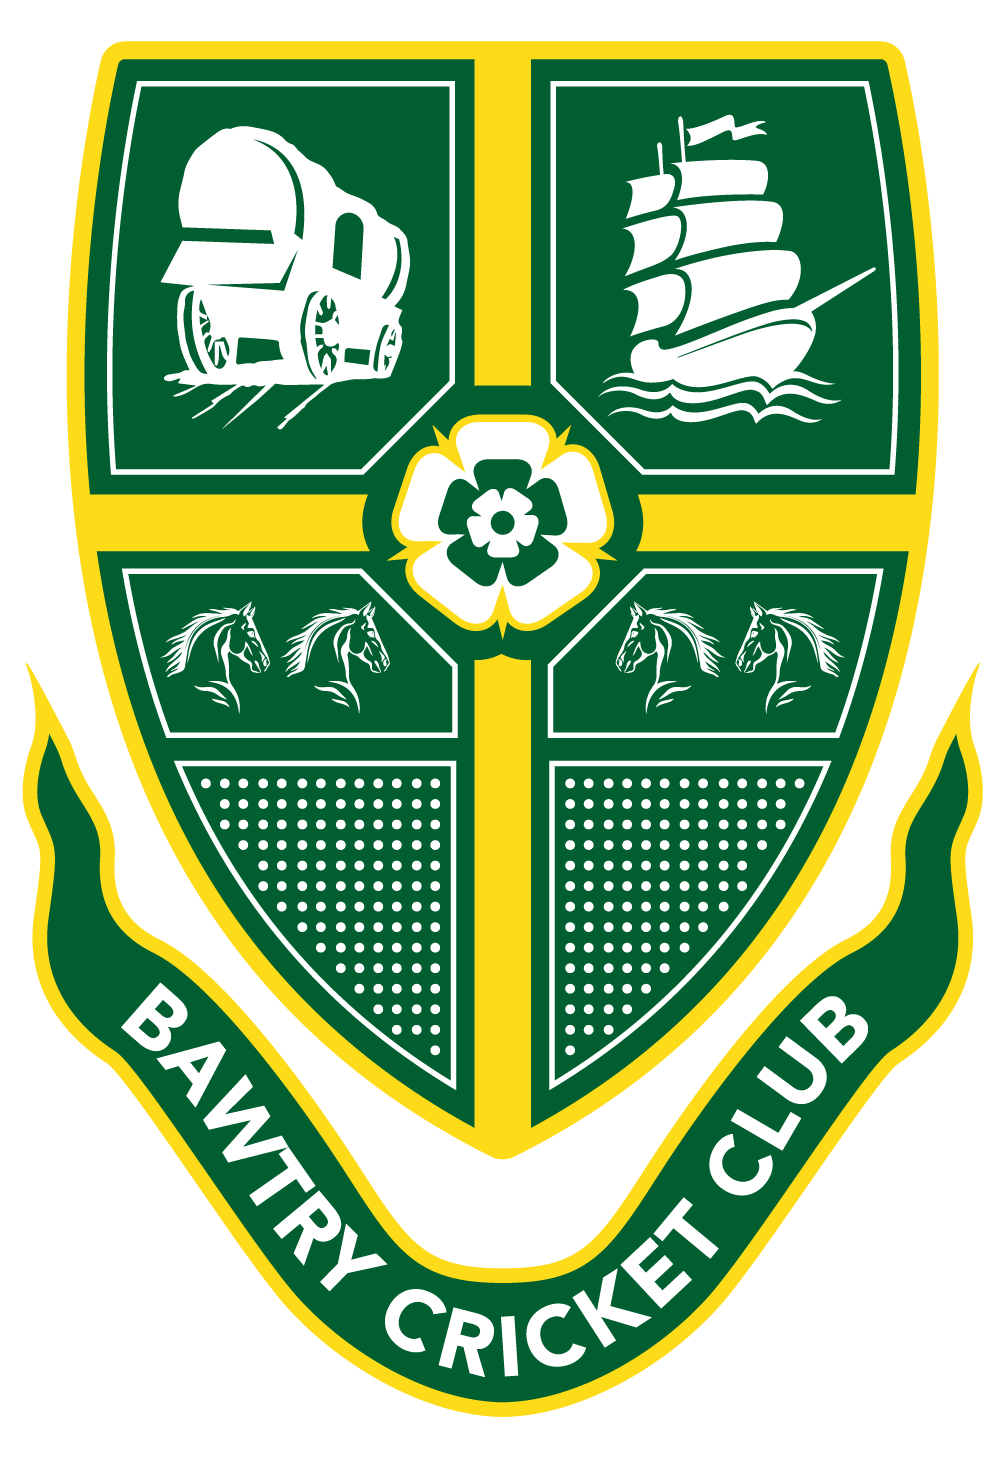 Bawtry Cricket Club